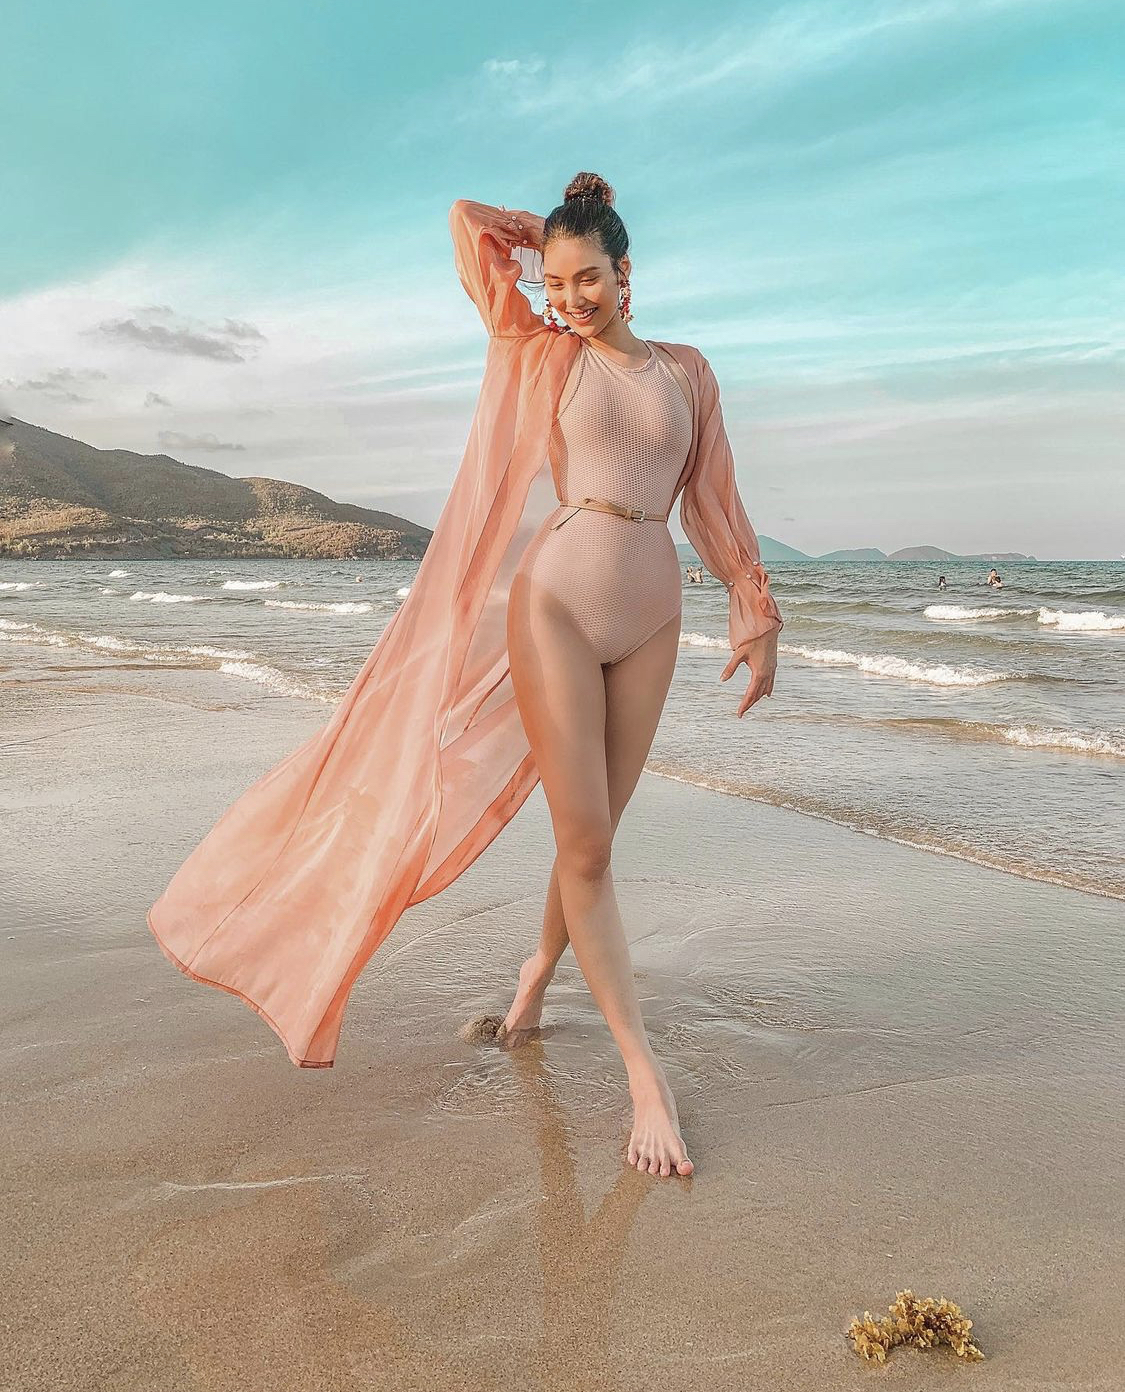 Trong một bức ảnh 'thả dáng' bên bờ biển, siêu mẫu Lan Khuê đã khiến nhiều chị em ngưỡng mộ với tốc độ giảm cân của cô chỉ vài tháng sau sinh. Được biết cô nàng chỉ mất vài tháng để giảm được 10kg so với thời kì mang thai